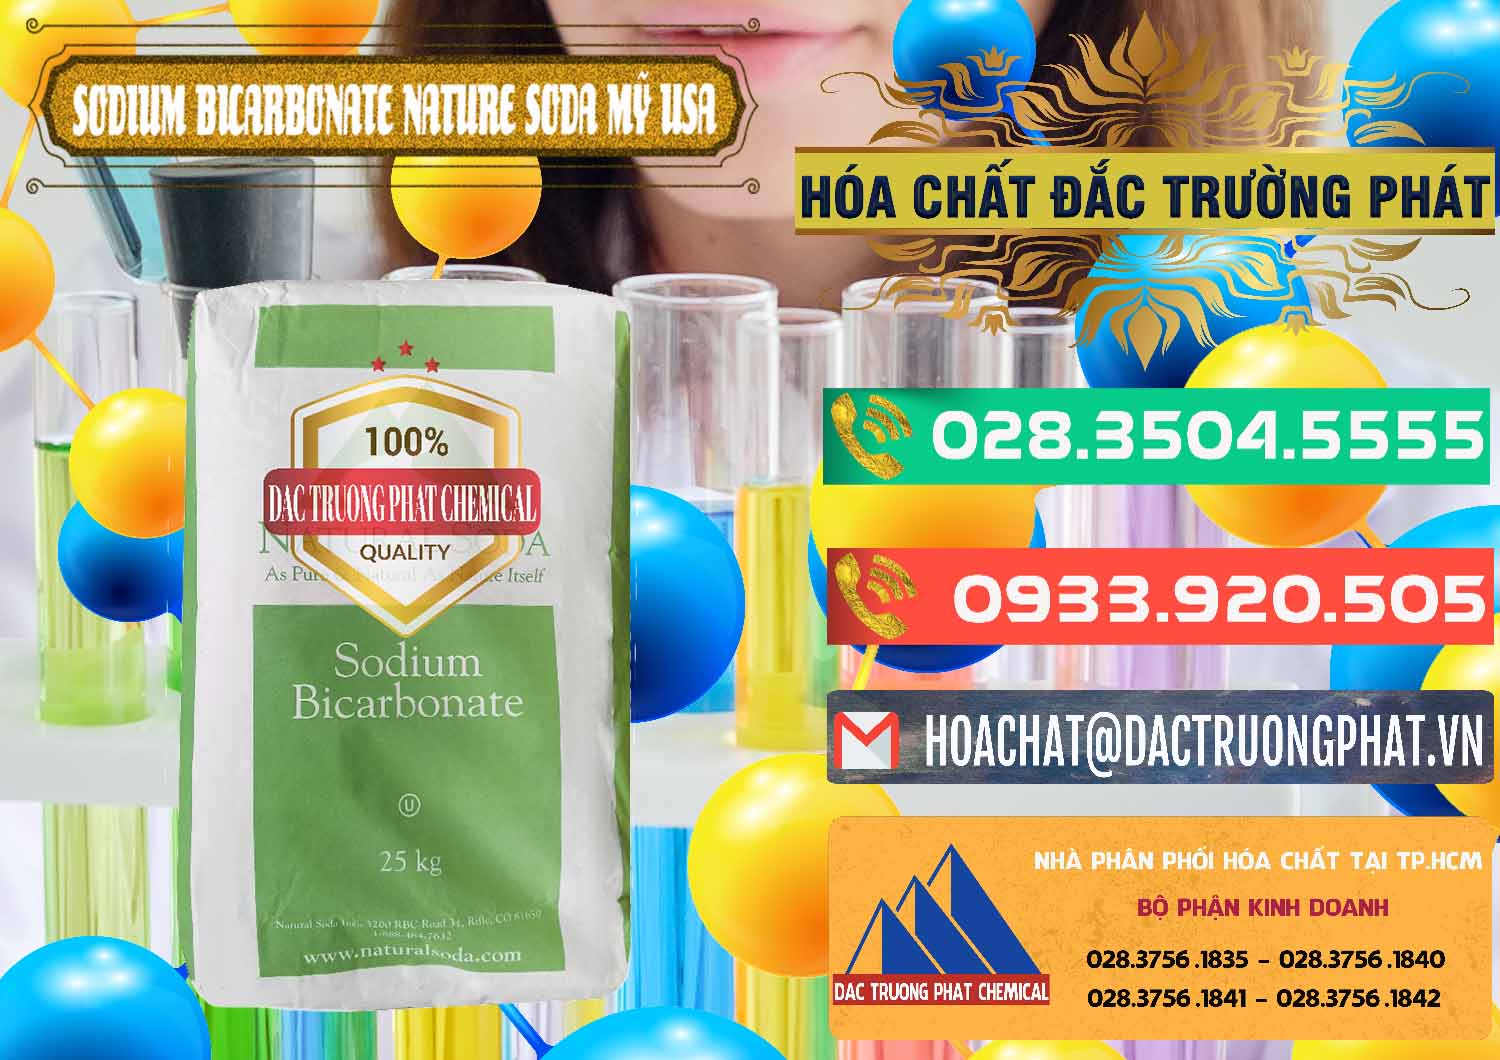 Công ty chuyên cung cấp _ bán Sodium Bicarbonate – Bicar NaHCO3 Food Grade Nature Soda Mỹ USA - 0256 - Cty cung cấp - kinh doanh hóa chất tại TP.HCM - congtyhoachat.com.vn